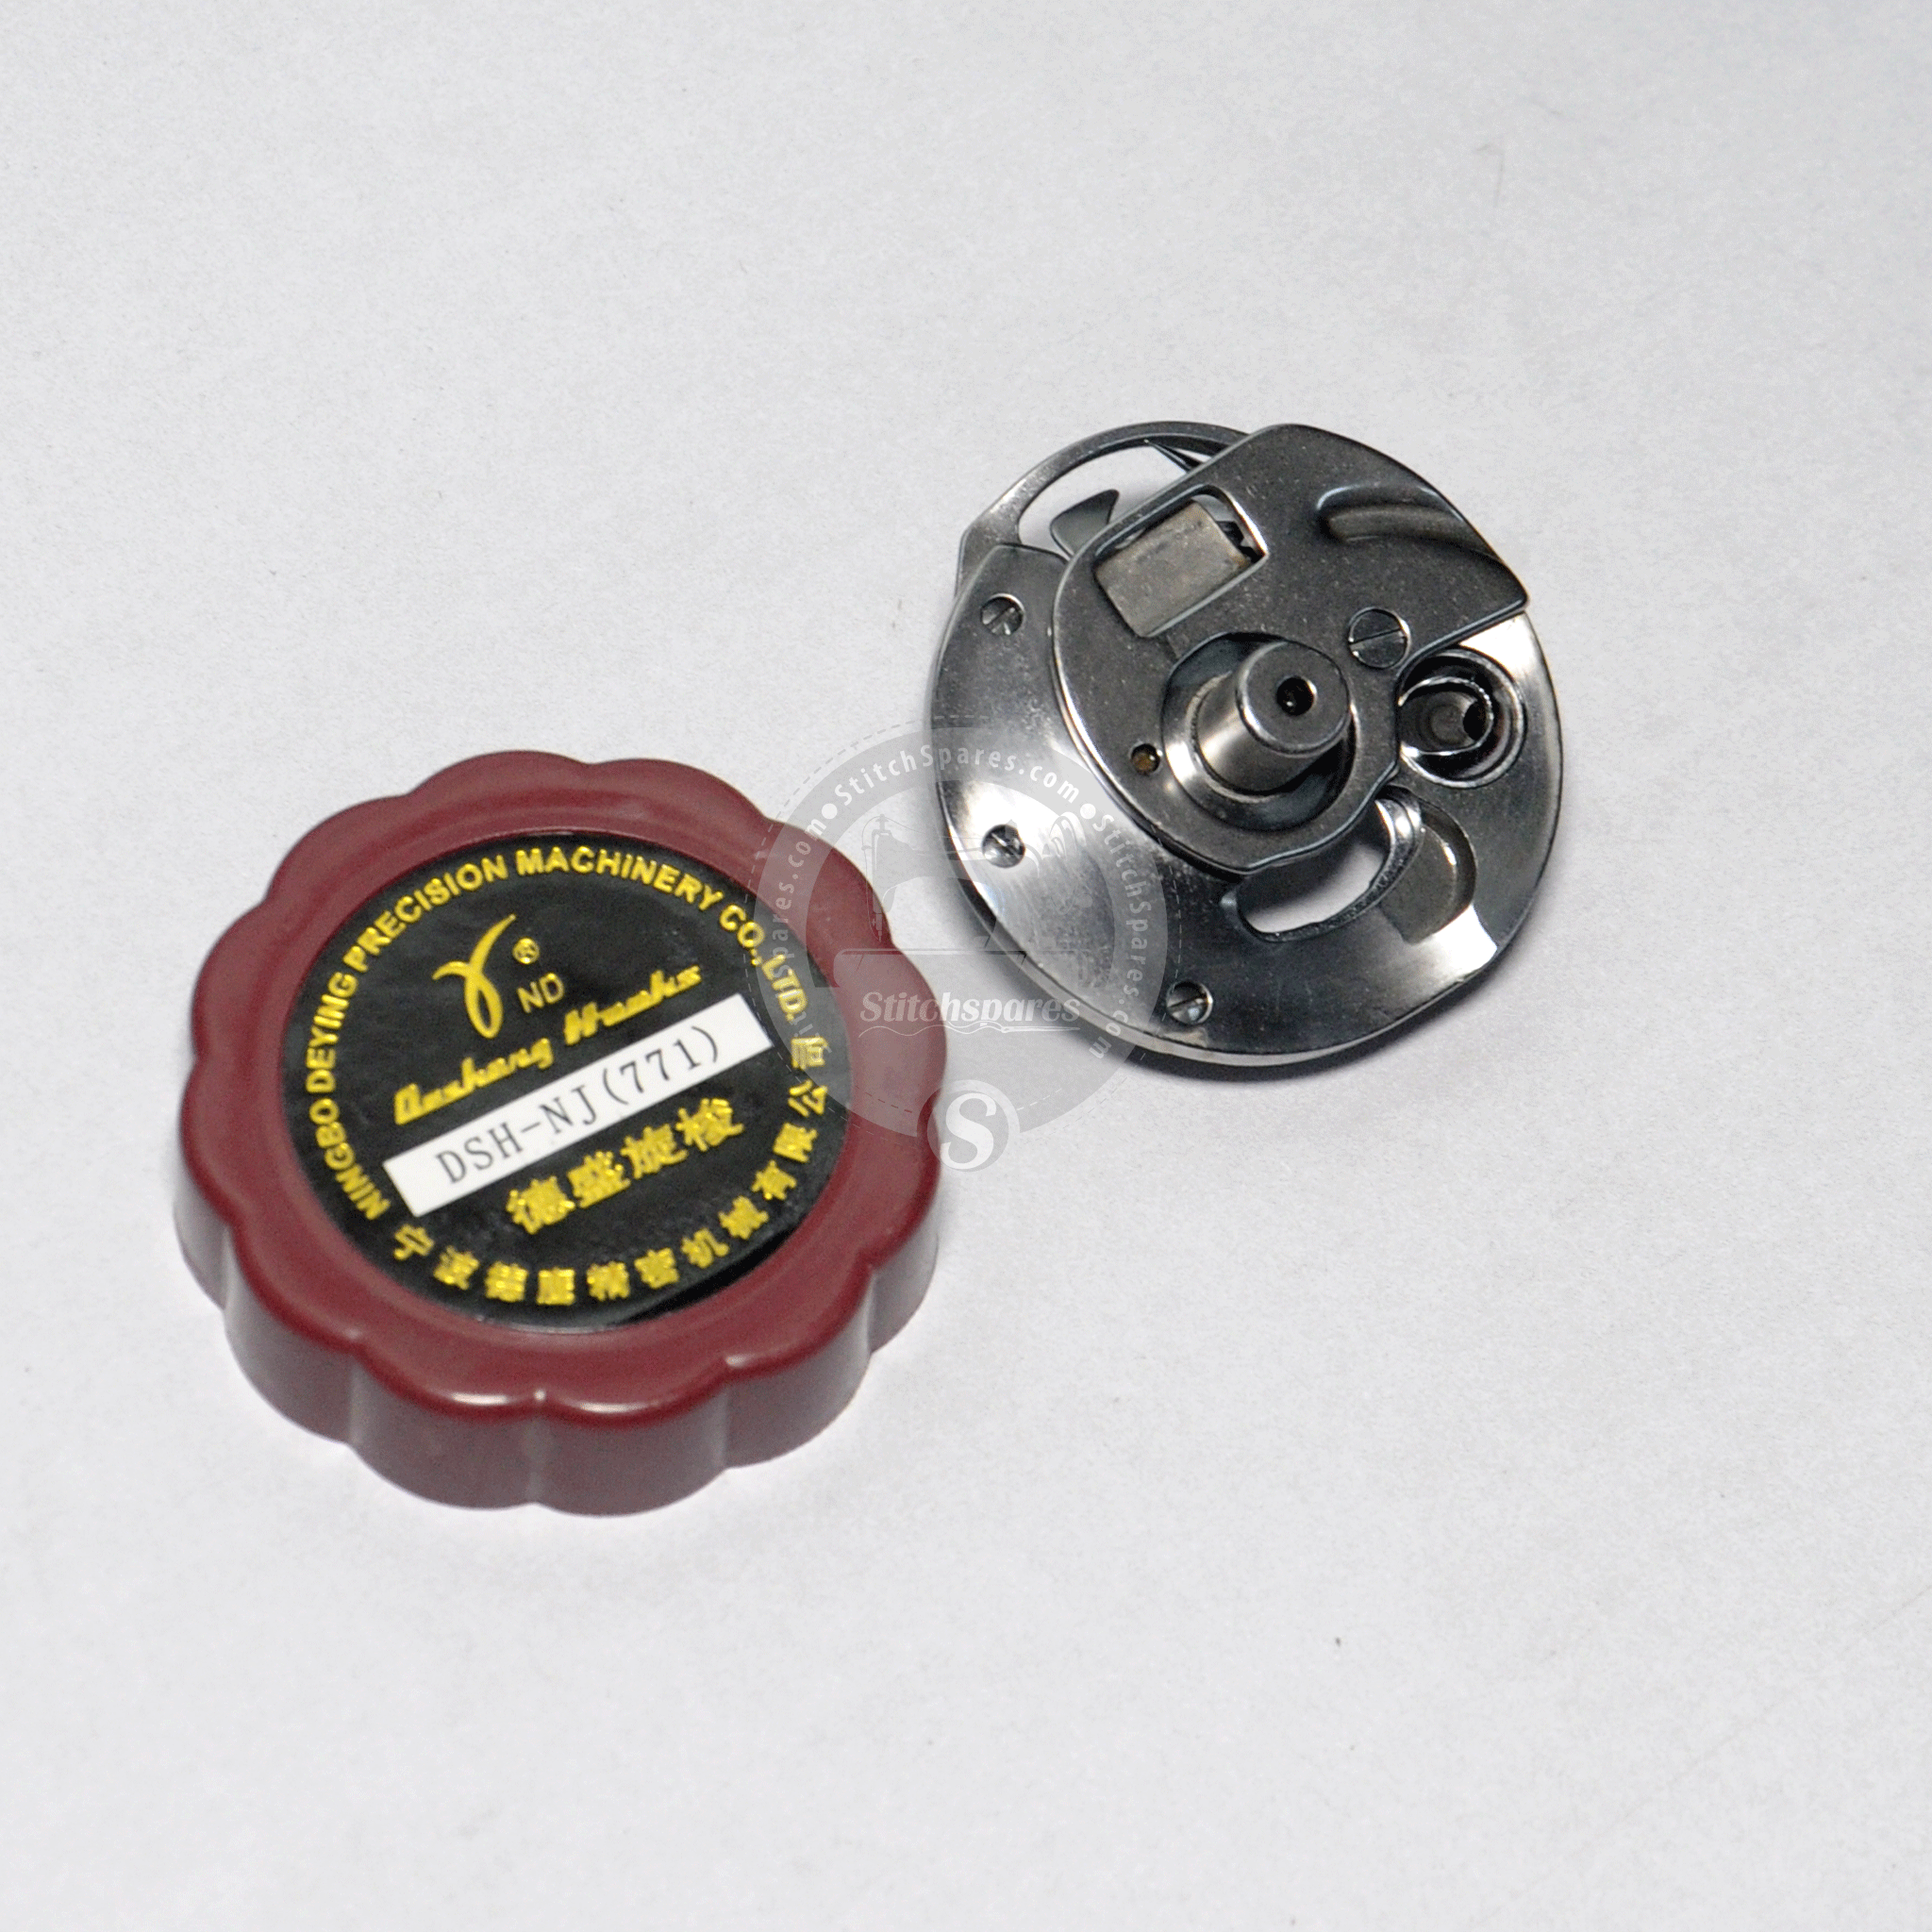 B1808-771-0A0 हुक सेट जुकी बटन होलिंग मशीनki